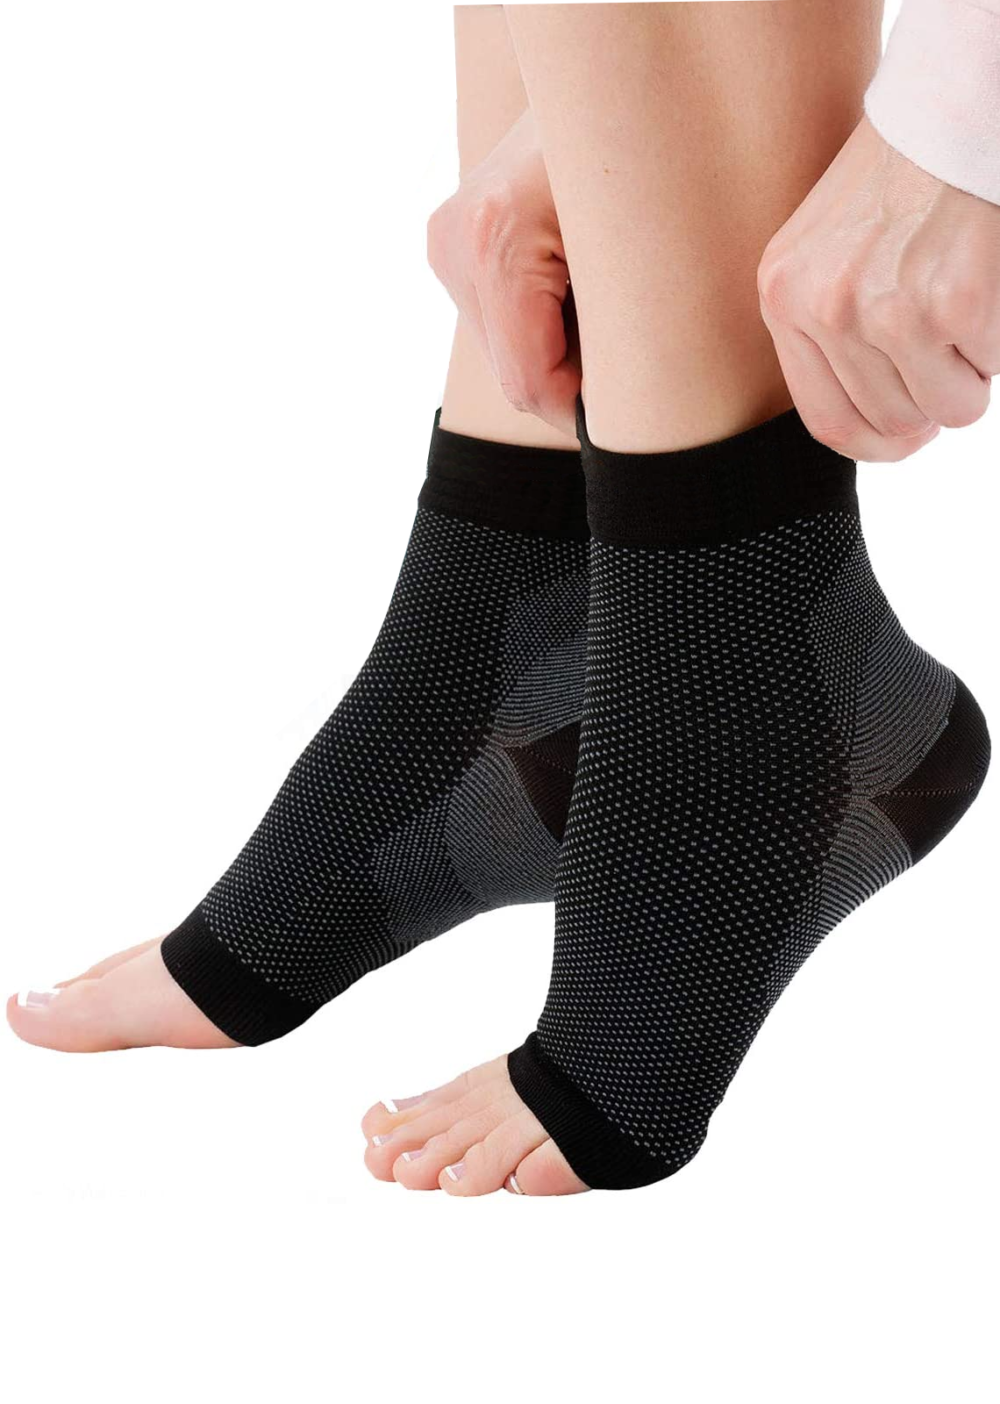 Socks for easing plantar fasciitis